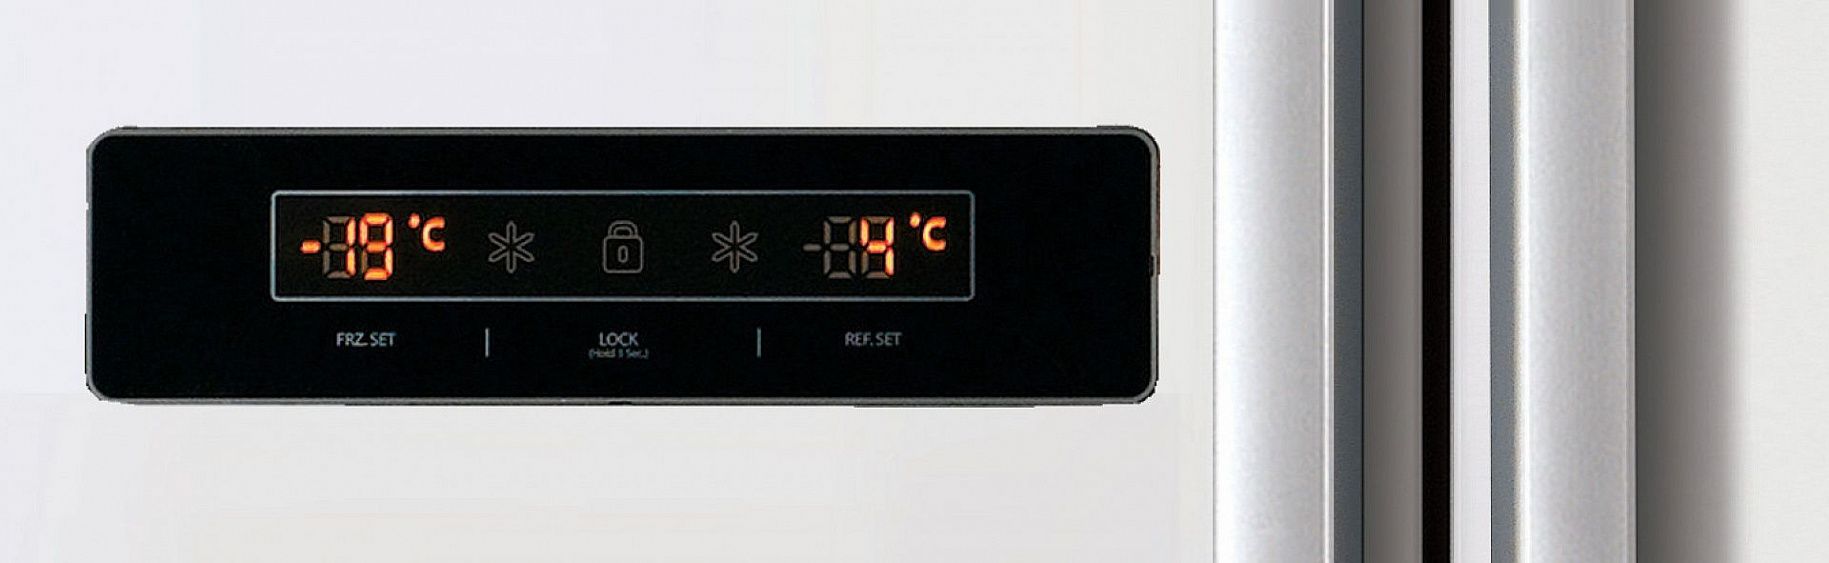 Холодильник Daewoo Electronics FRN-x600bcs